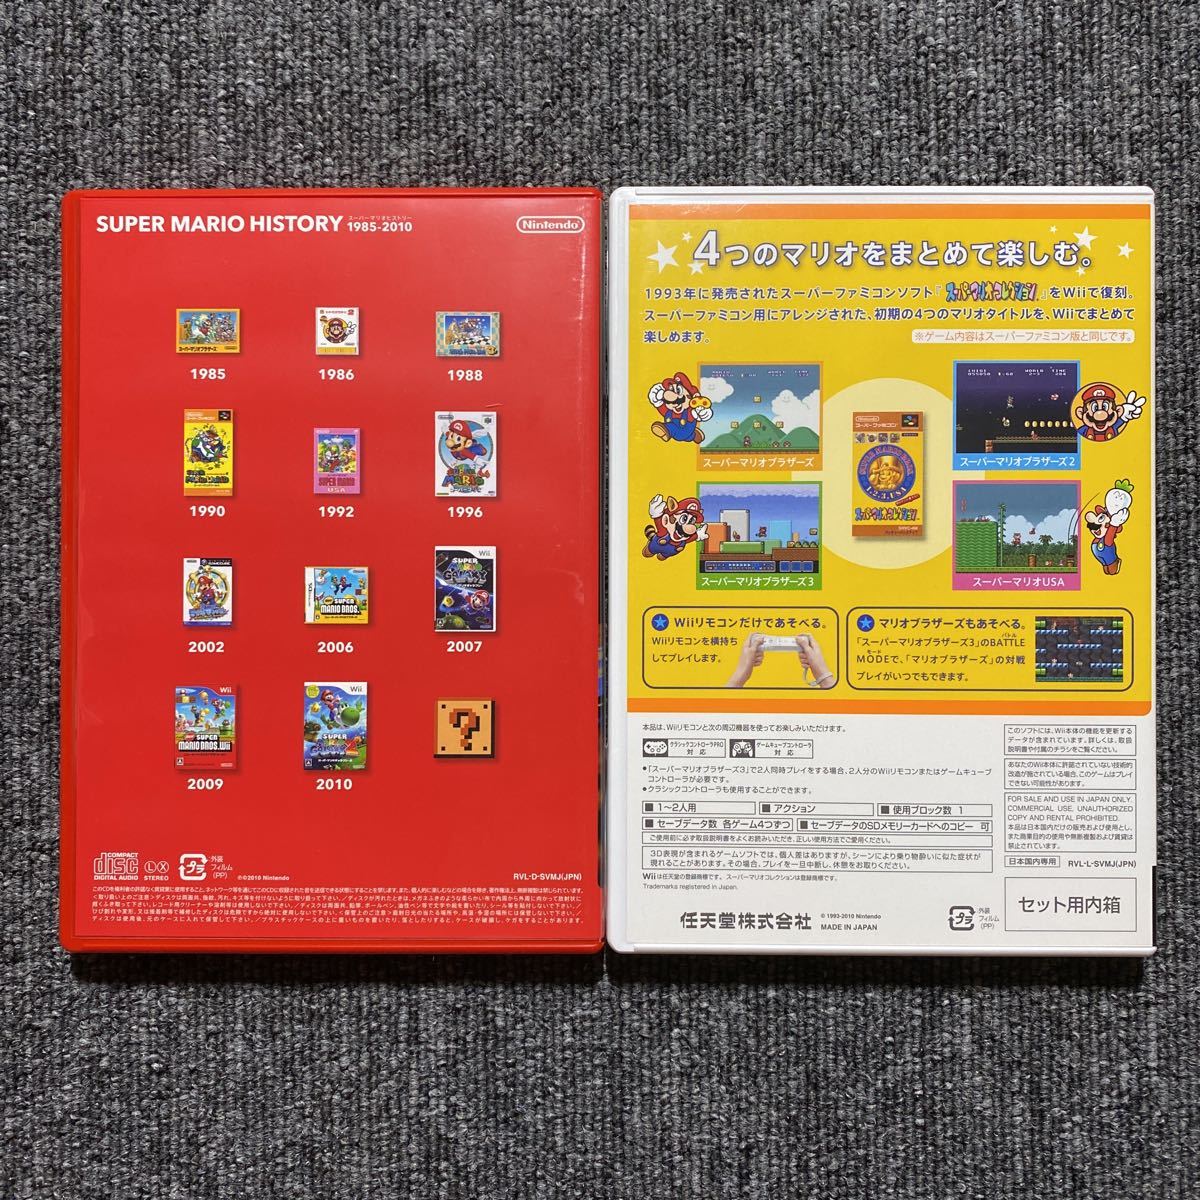 Wii NewスーパーマリオブラザーズWii スーパーマリオコレクション 2本セット